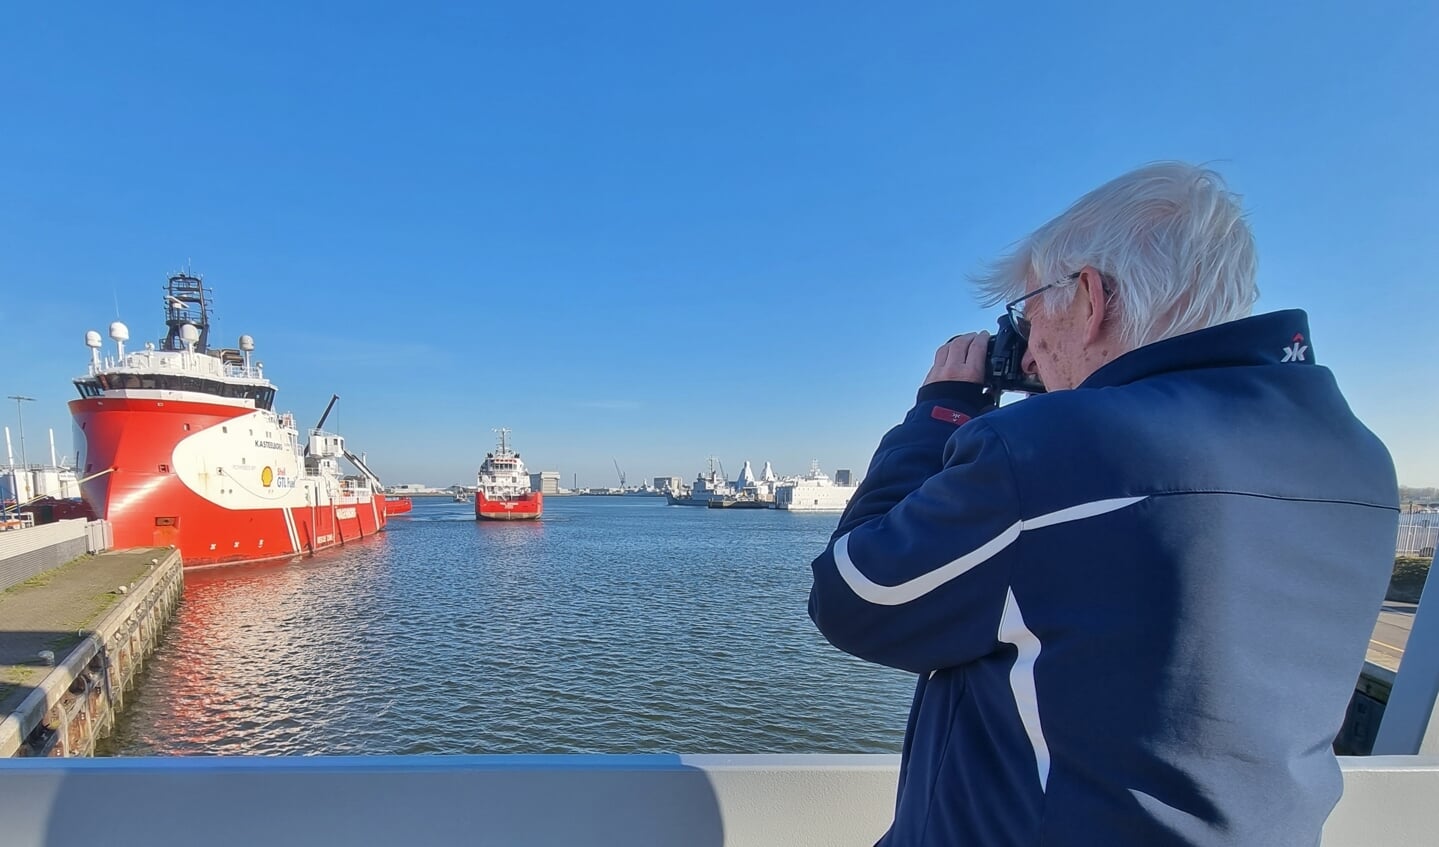 Paul Schaap druk aan het fotograferen in de Helderse haven.